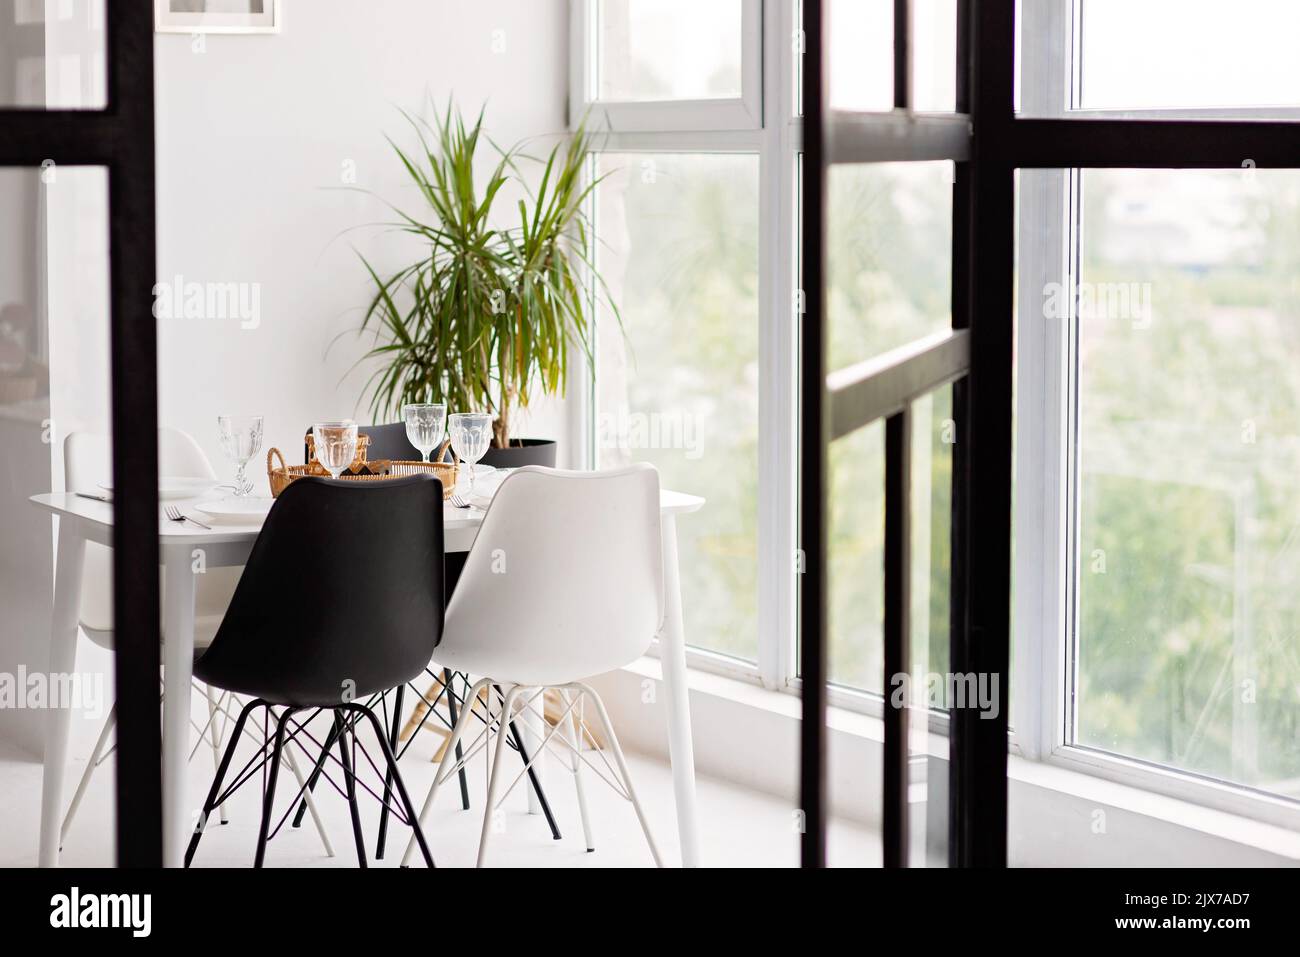 Modernes Interieur mit gemütlicher Küche, Esszimmer, weißen Möbeln, Stühlen, Schüsseln. Konzeptionelles Dekor-Design, Werbung, Hypothek für ein junges Fam Stockfoto